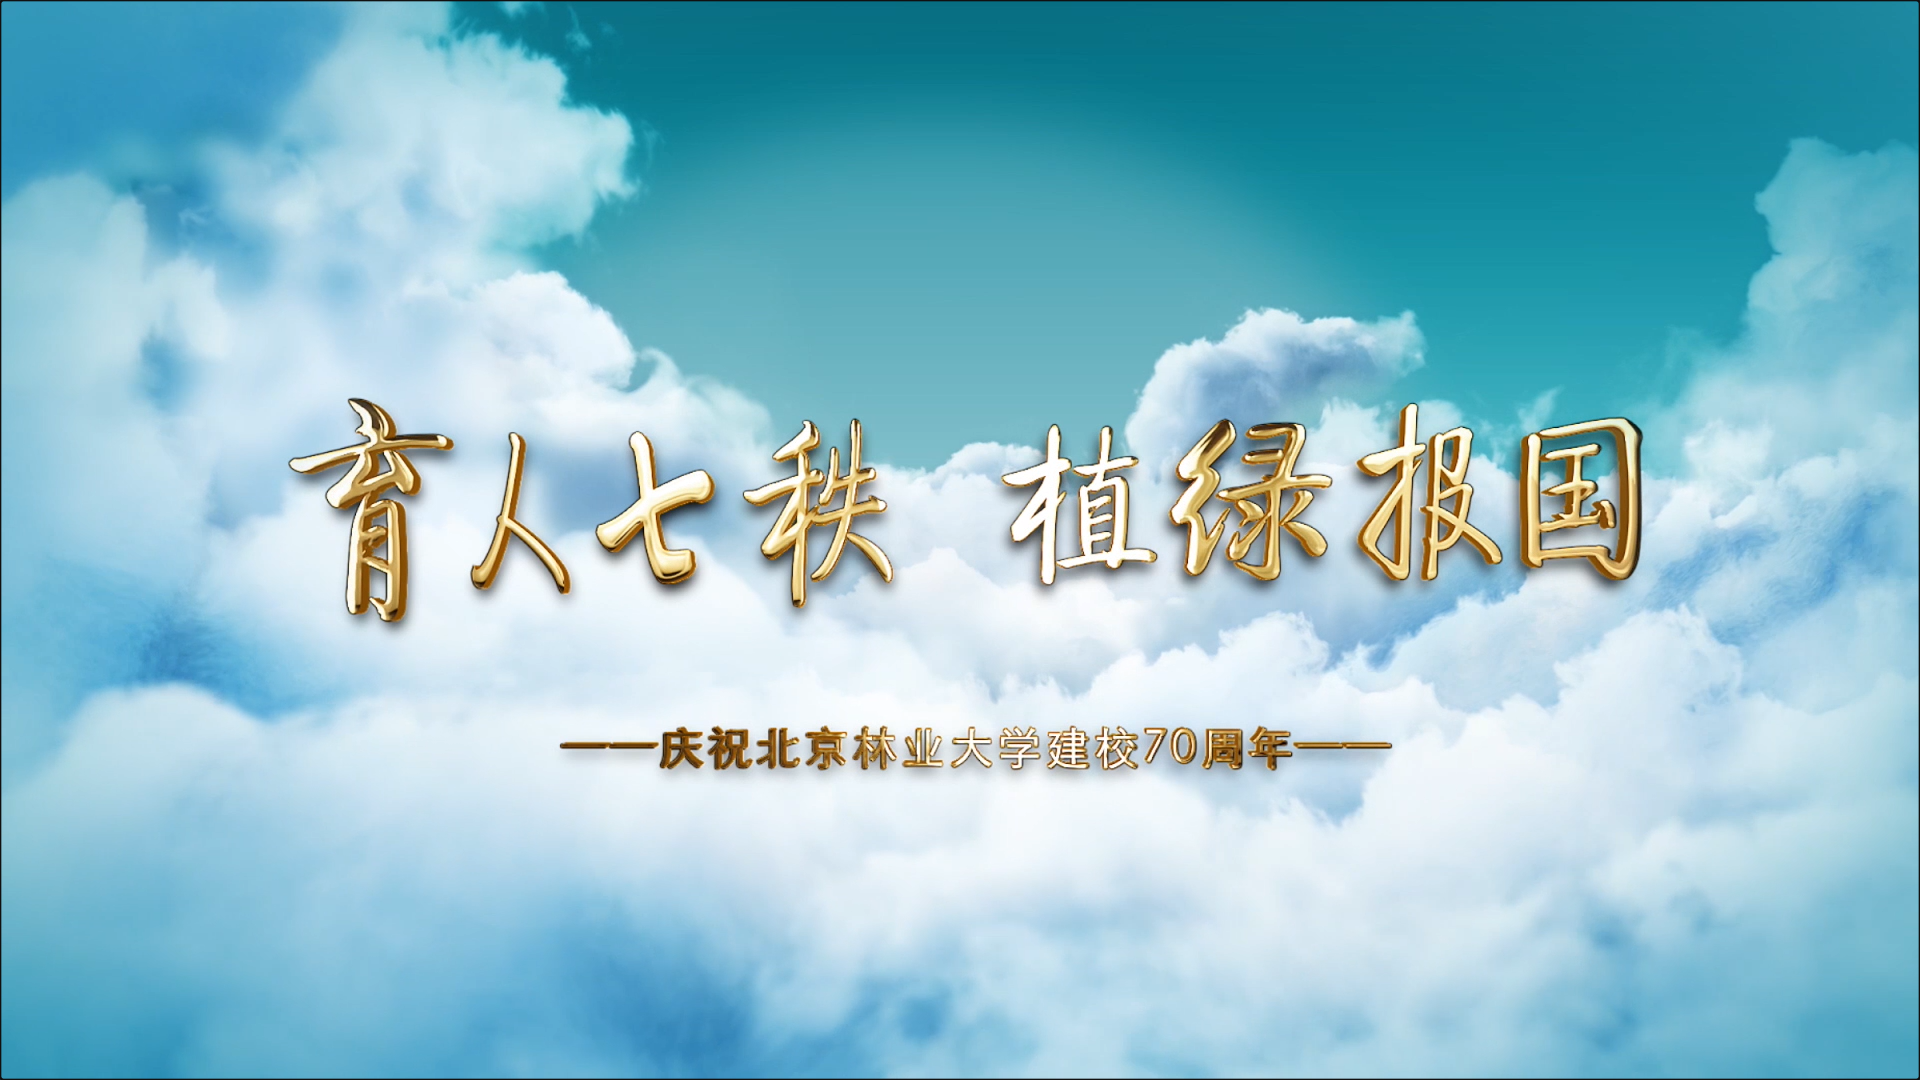 北京林业大学建校七十周年宣传片央视首播